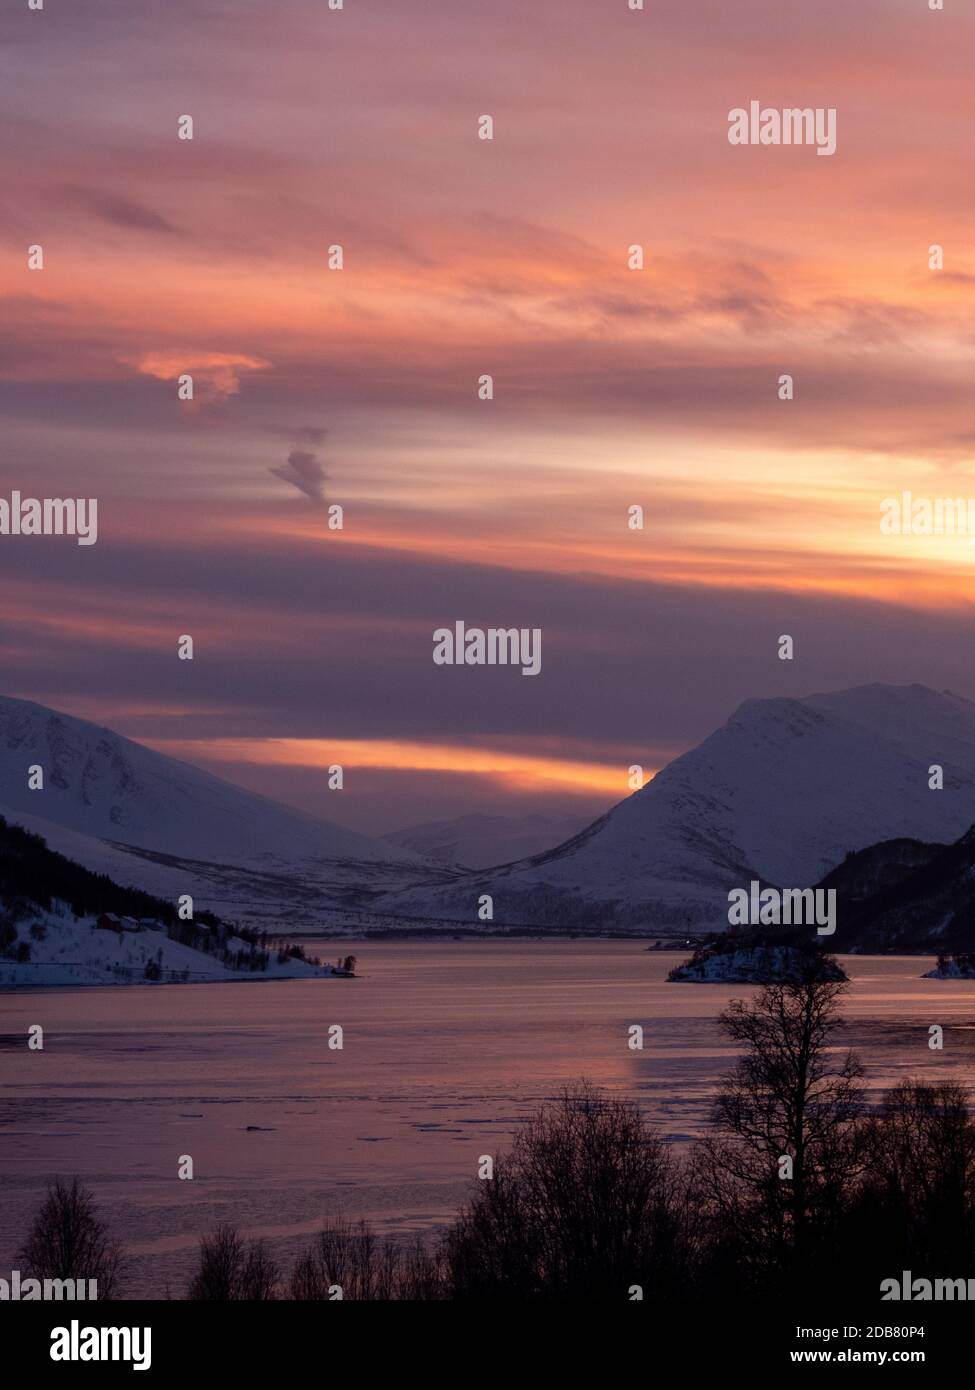 Troms og Finnmark ist ein Landkreis in Nordnorwegen, der am 1. Januar 2020 gegründet wurde. Stockfoto